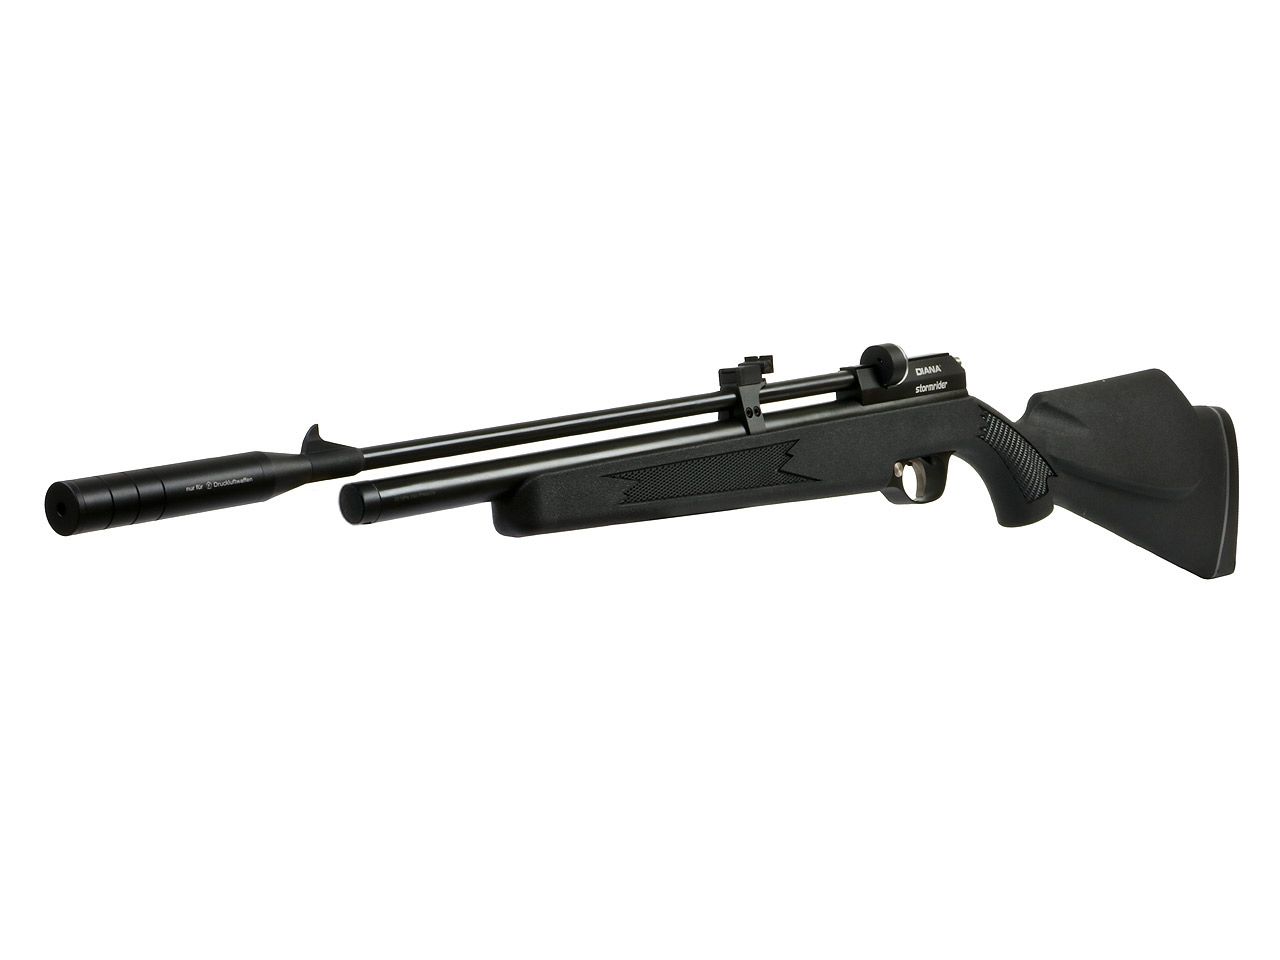 Pressluftgewehr Diana Stormrider Black schwarzer Kunststoffschaft mit Regulator 7 Schuss Magazin Schalldämpfer Kaliber 5,5 mm (P18)